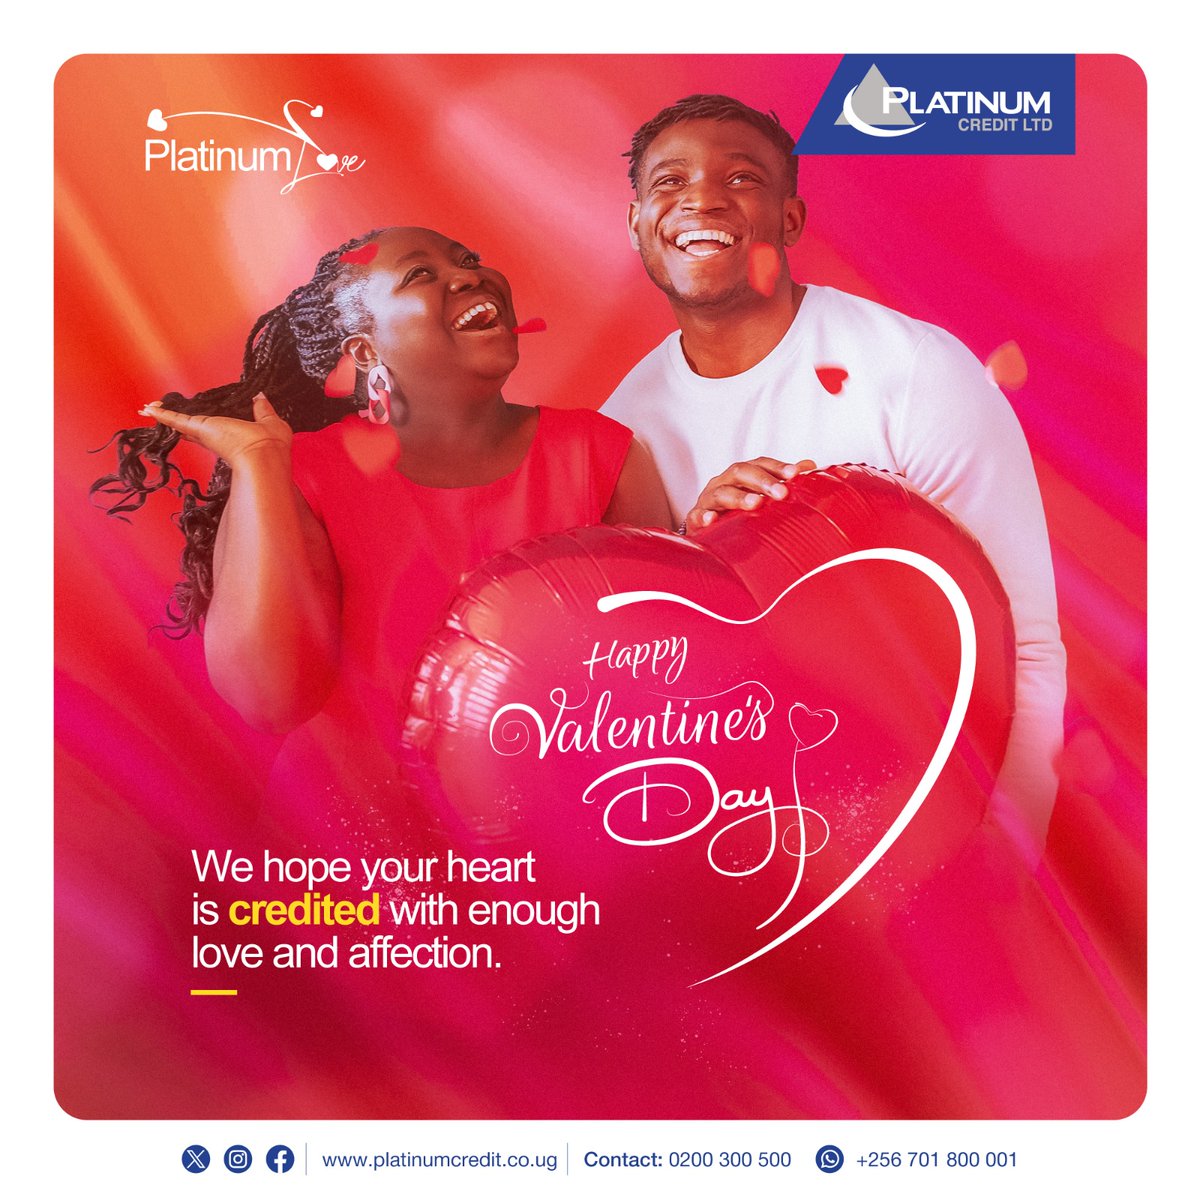 Happy Valentine
@pcl_uganda
#Therewhenyouneedus